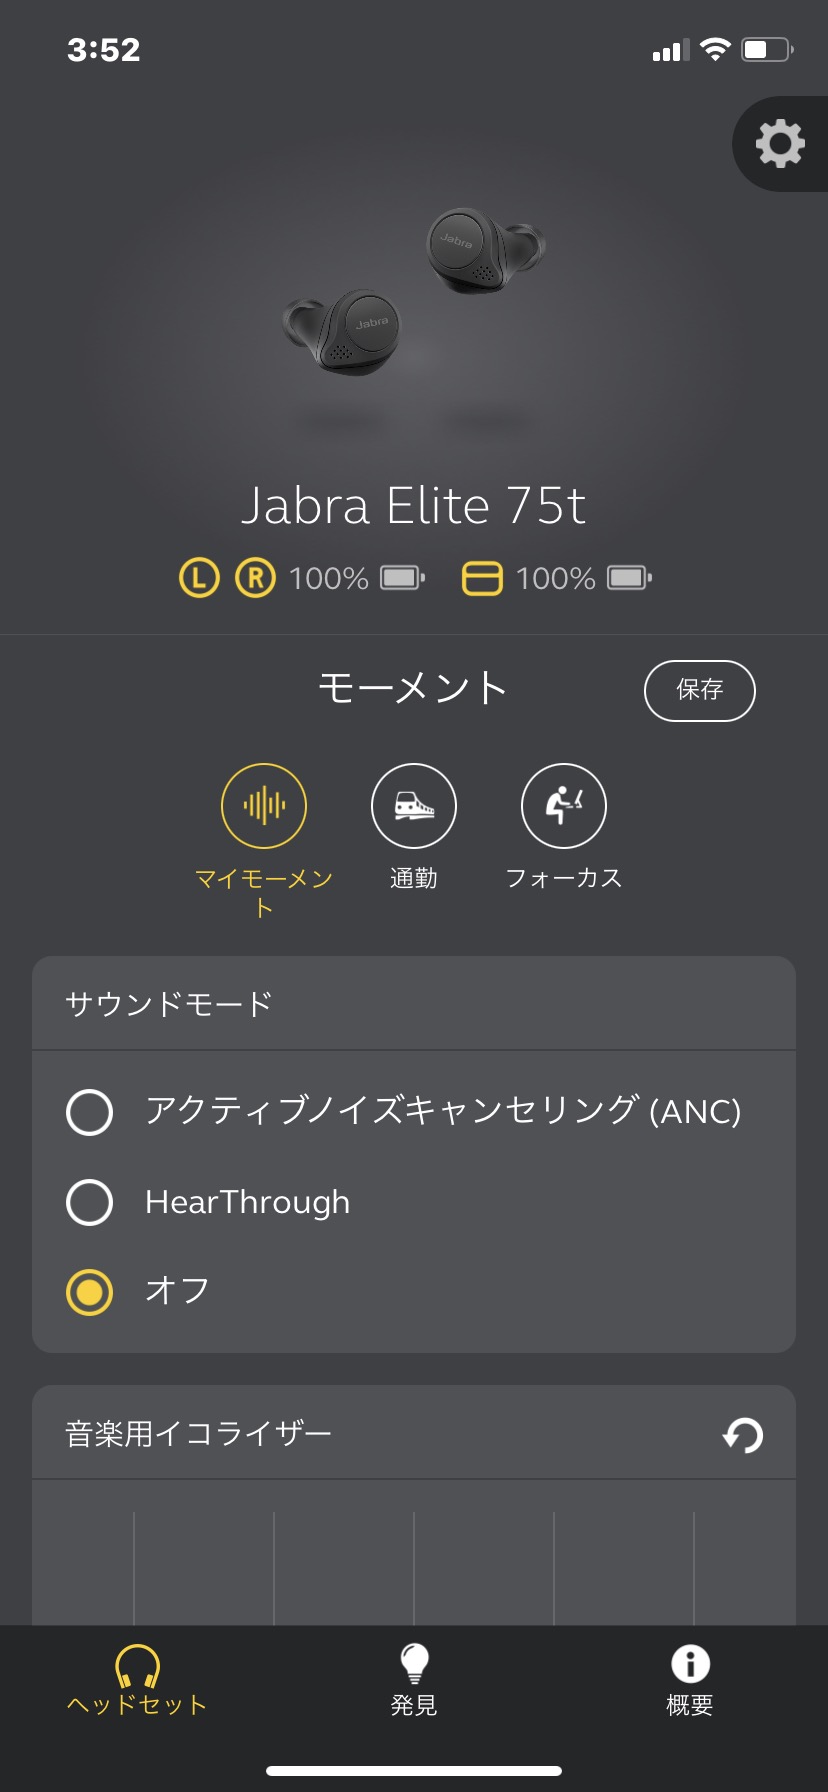 Jabra Elite 75t Anc レビューチェック アプリ更新でanc機能が追加された完全ワイヤレスイヤホン ヲチモノ